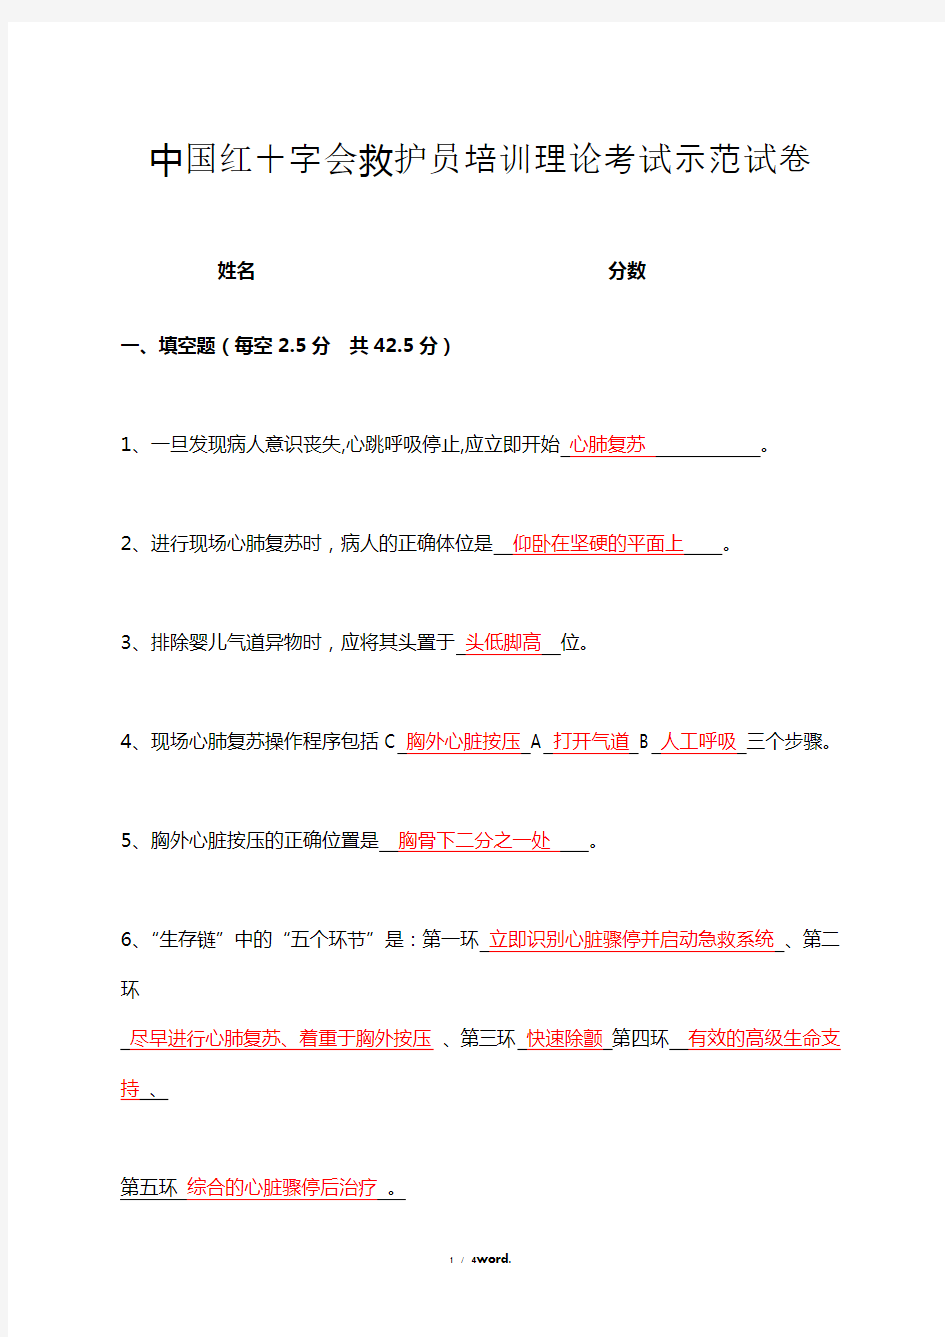 中国红十字会救护员培训理论考试示范卷试答案新选.